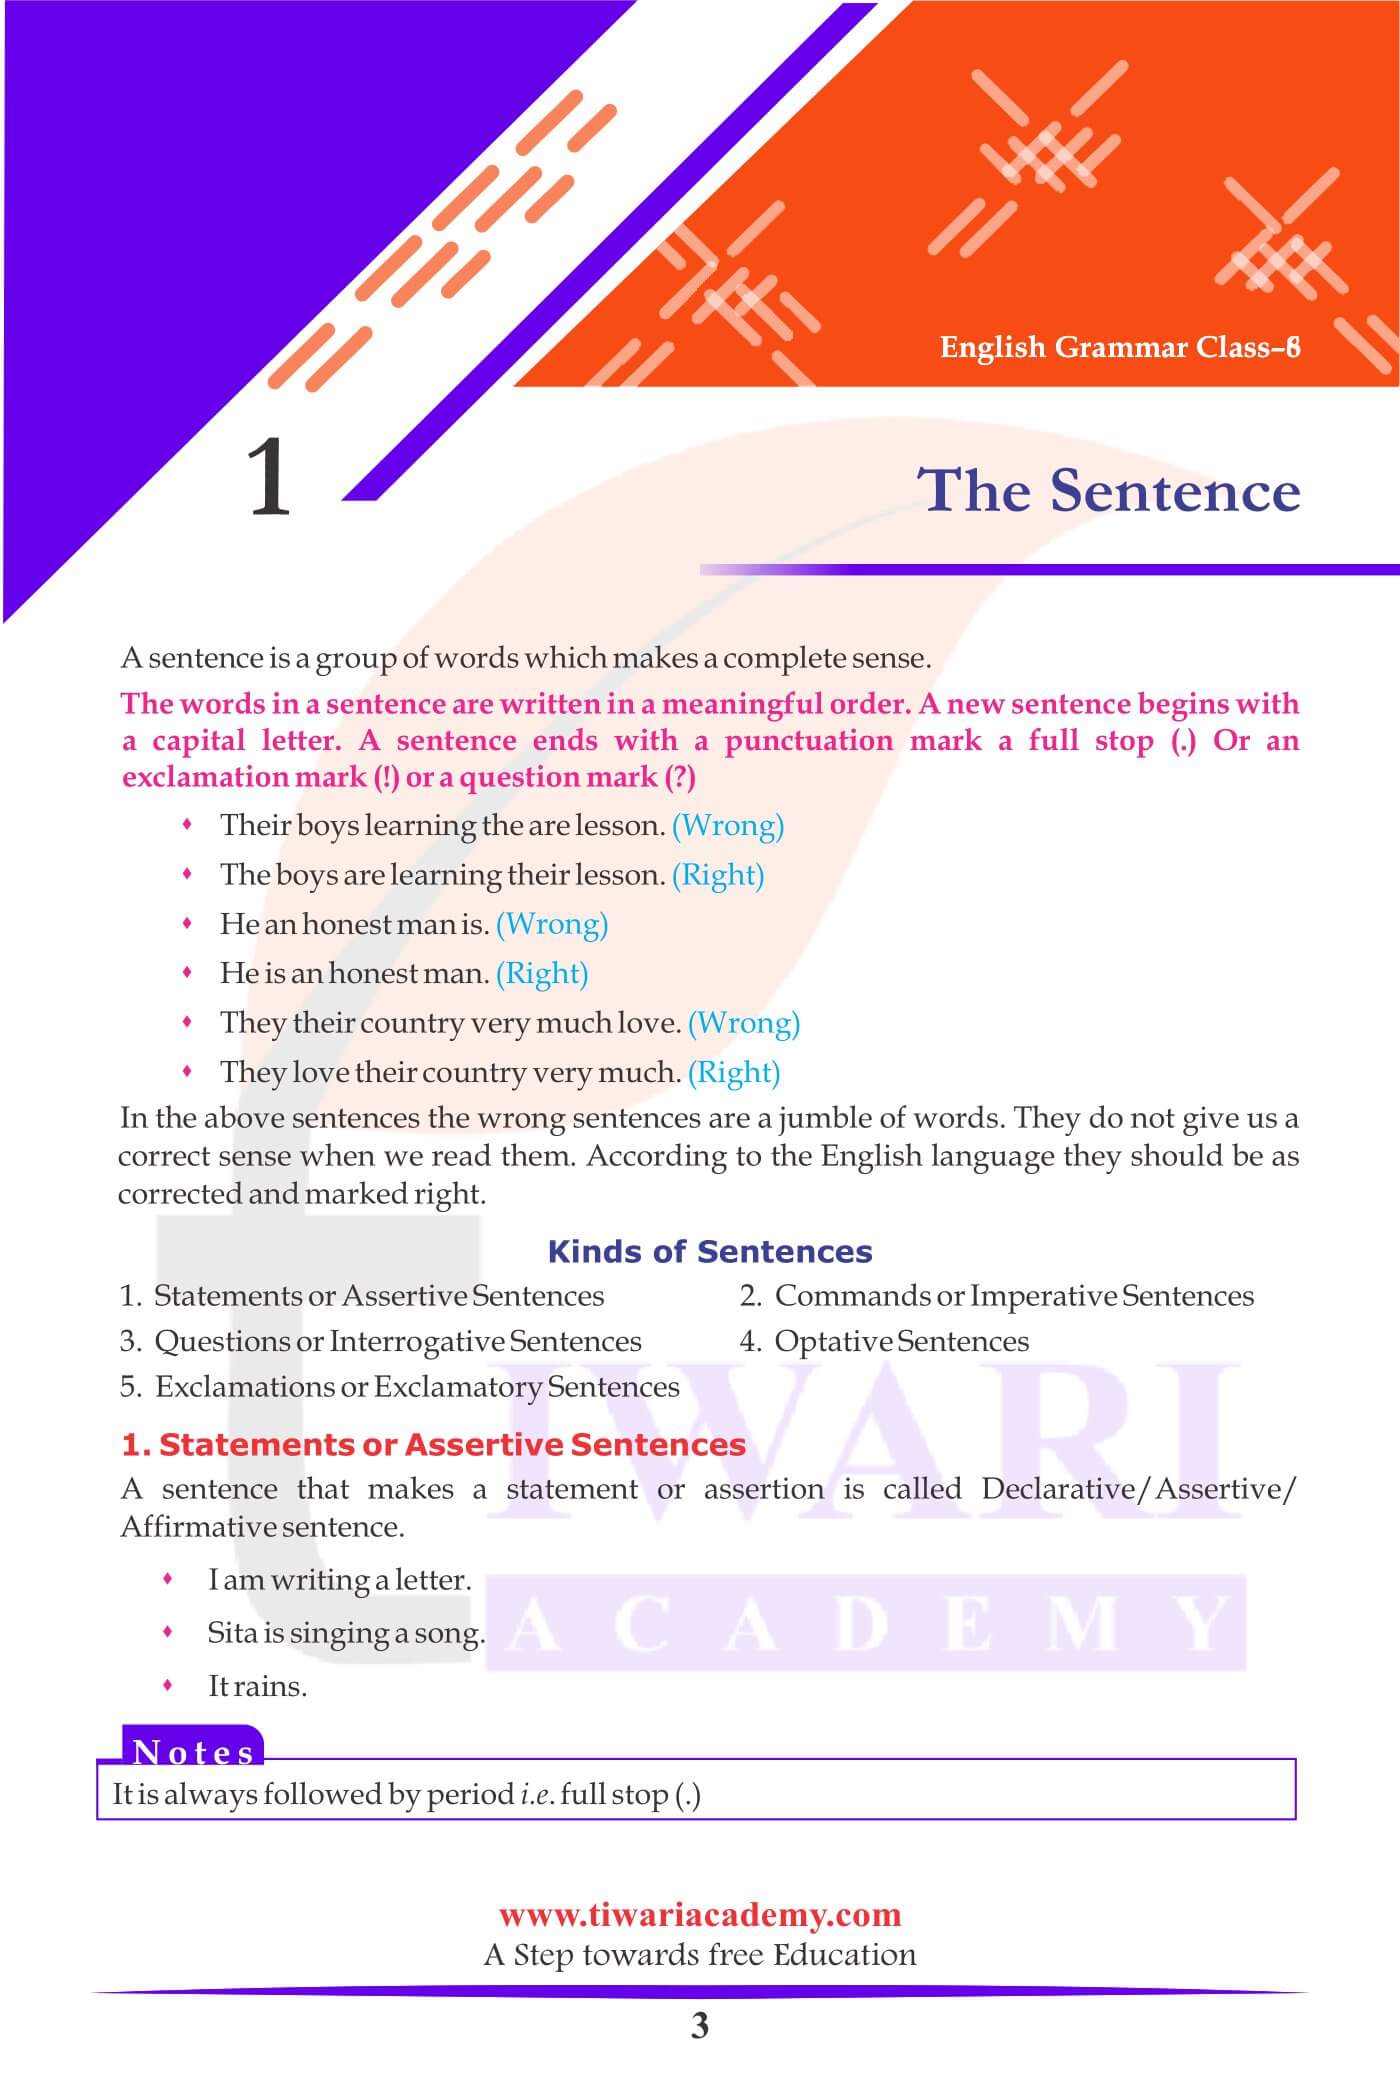 Class 8 English Grammar Chapter 1 The Sentence